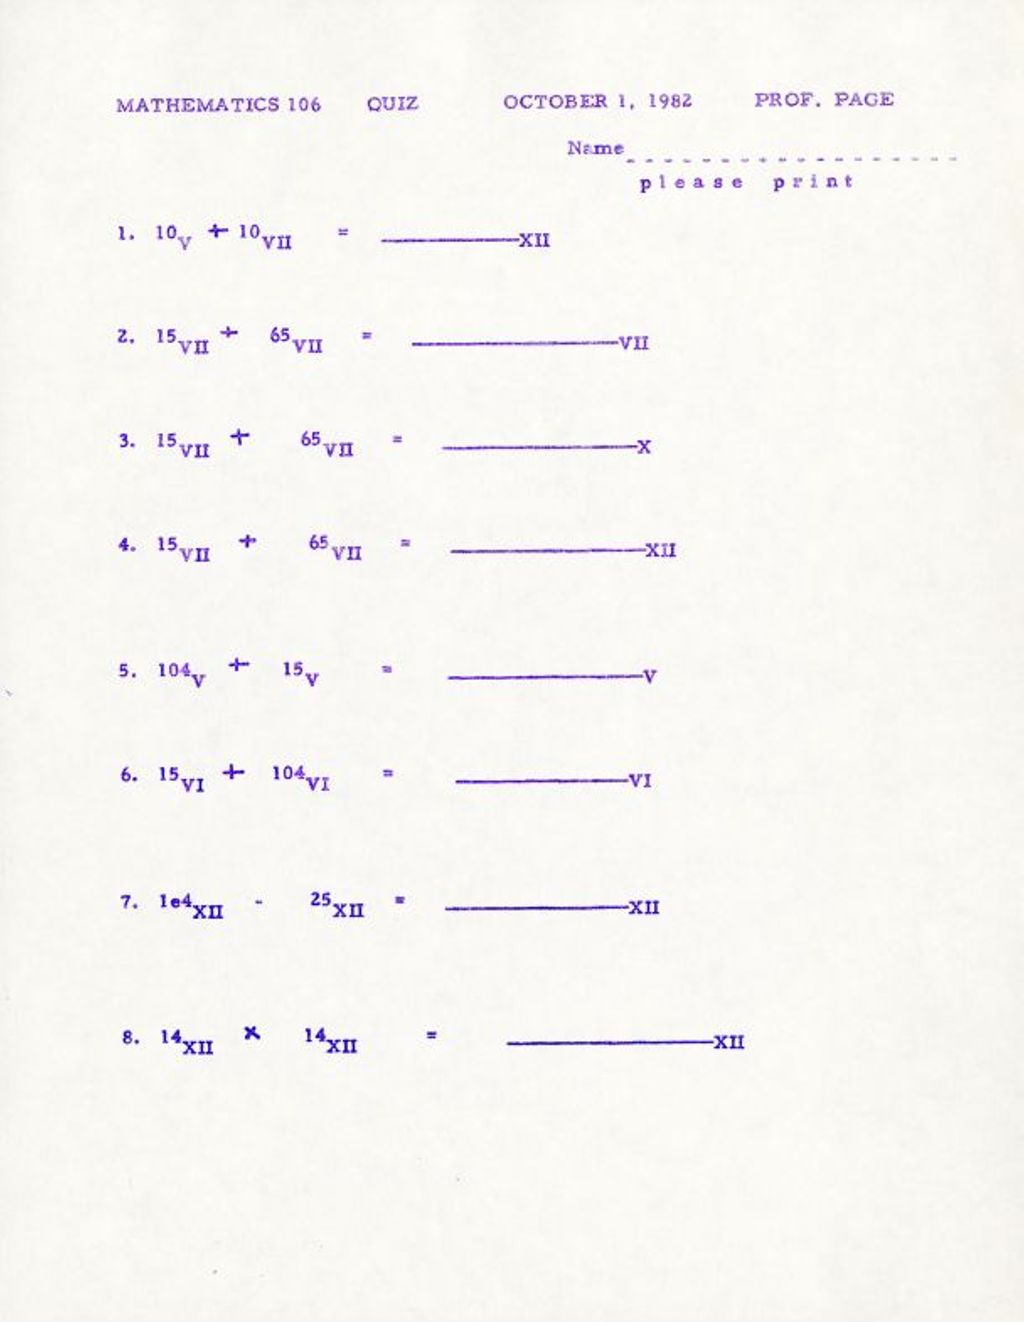 Math 106 Quiz (1982) 10V + 100VII